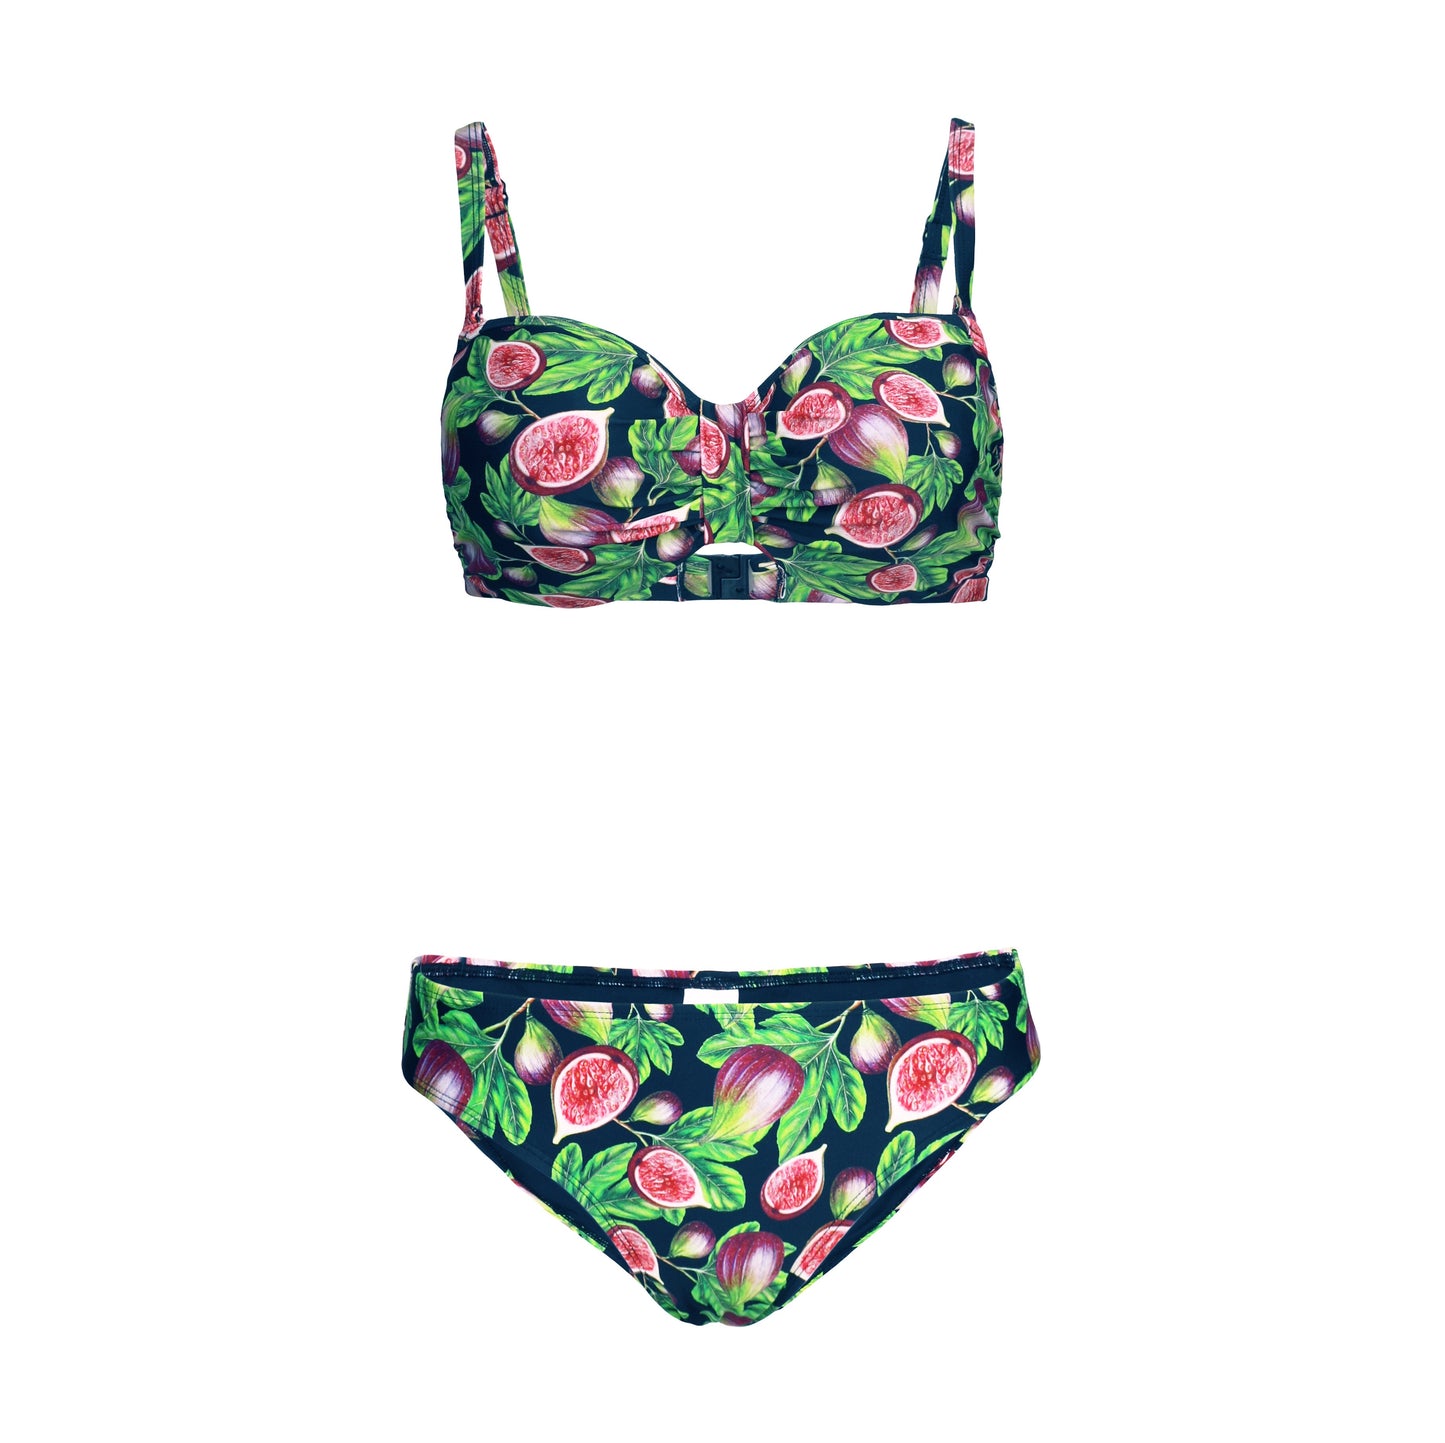 INA 'Figs’ Bikini - PLIVATI Women's Swimwear